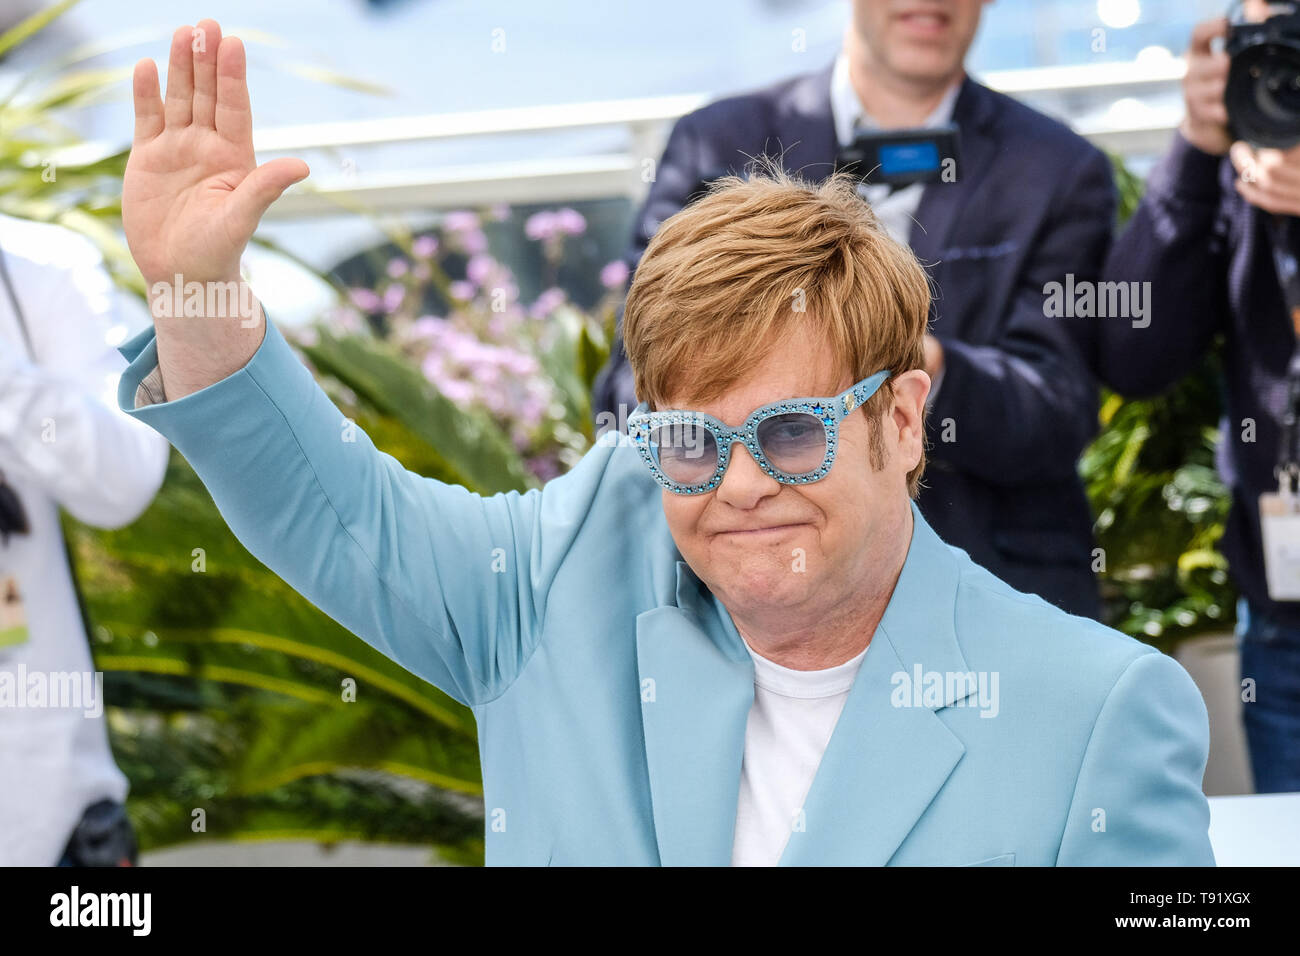 Cannes, Francia. 16 Maggio, 2019. Elton John pone a un photocall per Rocketman giovedì 16 maggio 2019 presso la 72a edizione del Festival de Cannes, Palais des Festivals Cannes. Nella foto: Elton John. Foto di credito: Julie Edwards/Alamy Live News Foto Stock